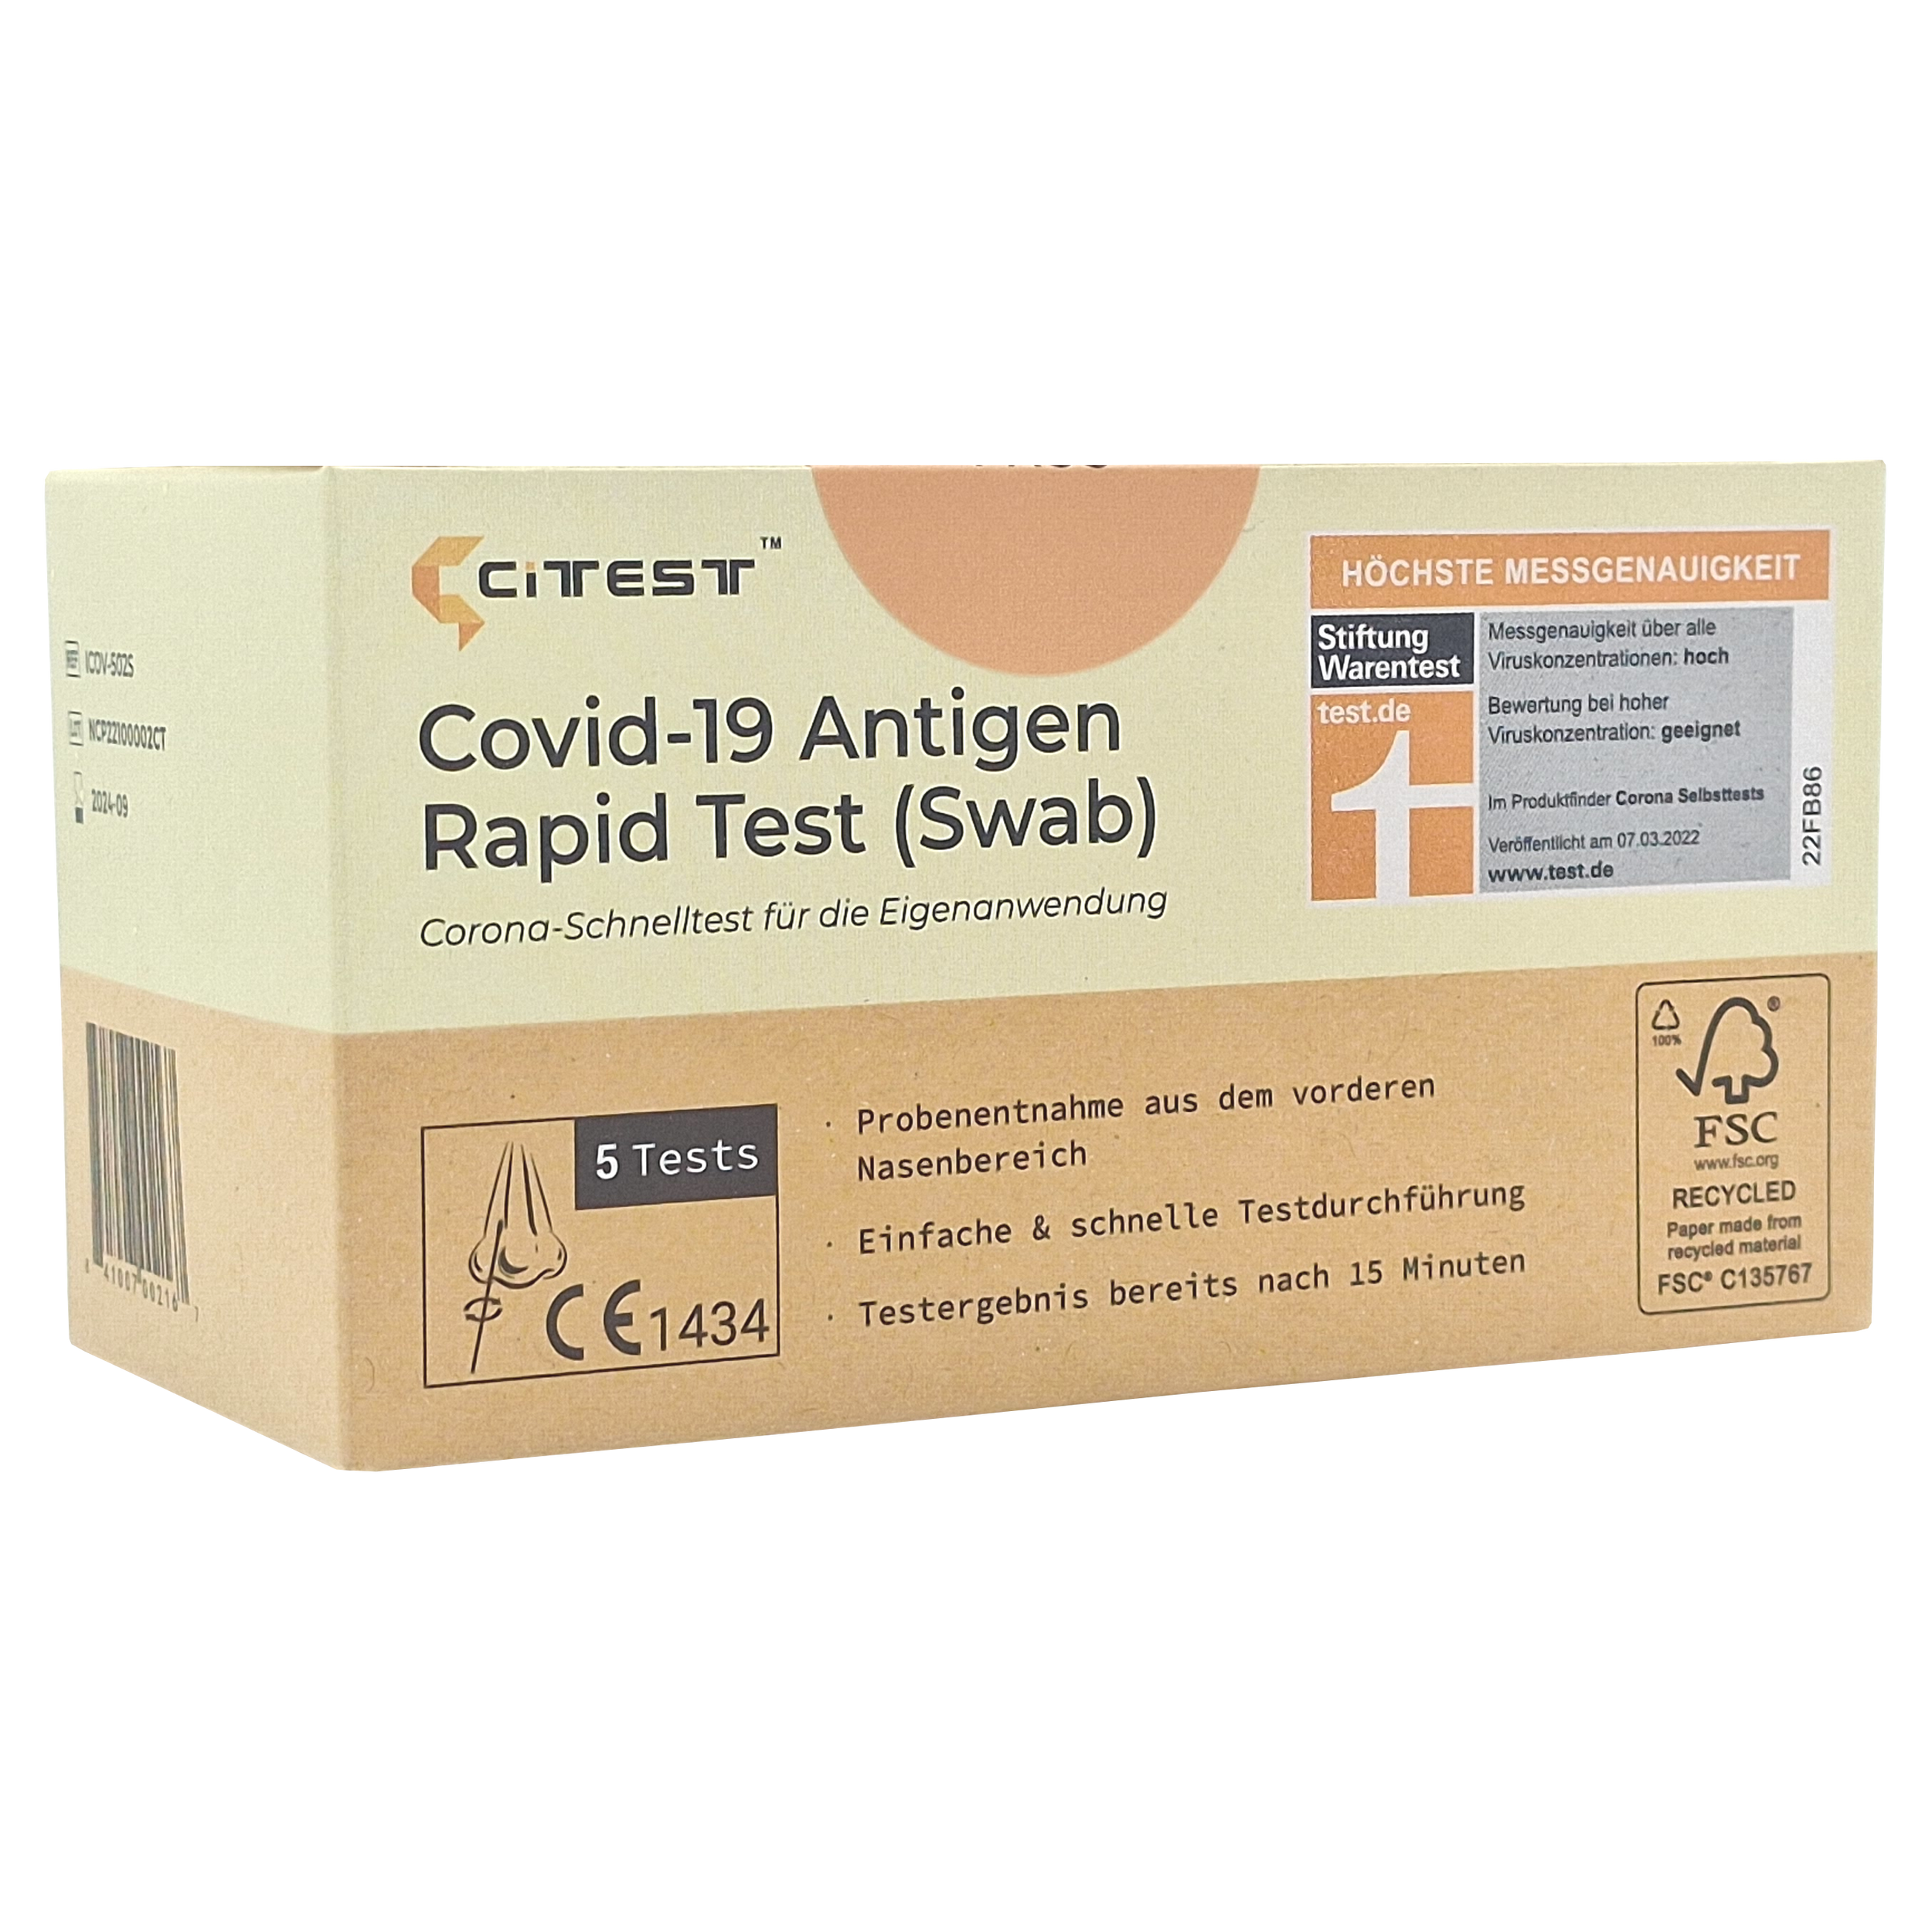 Citest COVID-19 Antigen Schnelltest Nasal für Laien Pack: 5 Stück